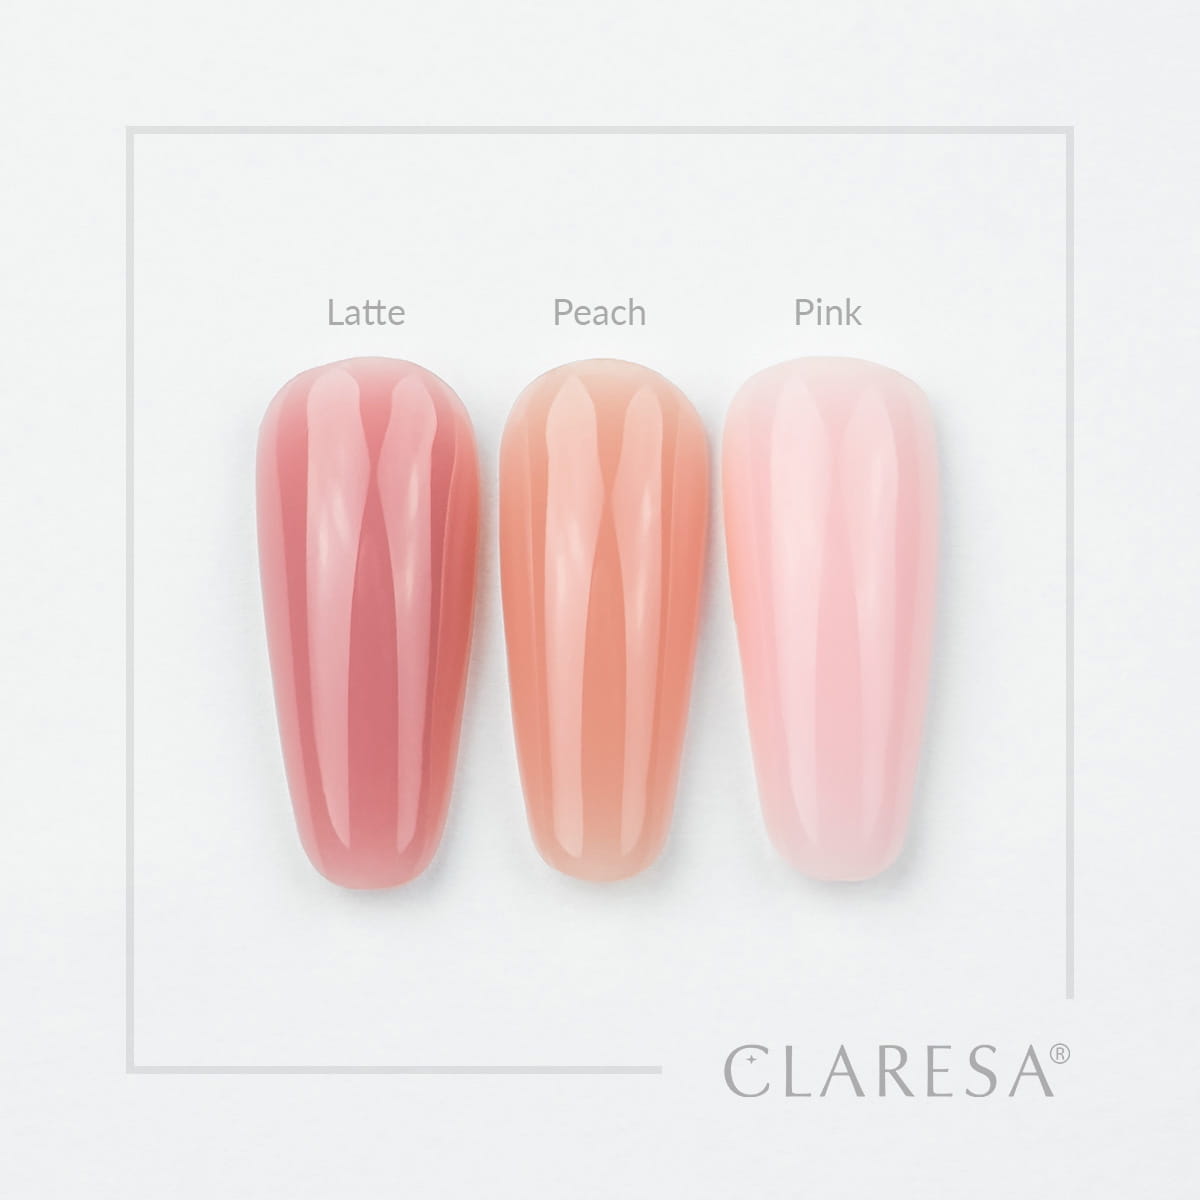 Claresa Poly Gel 30g - Peach